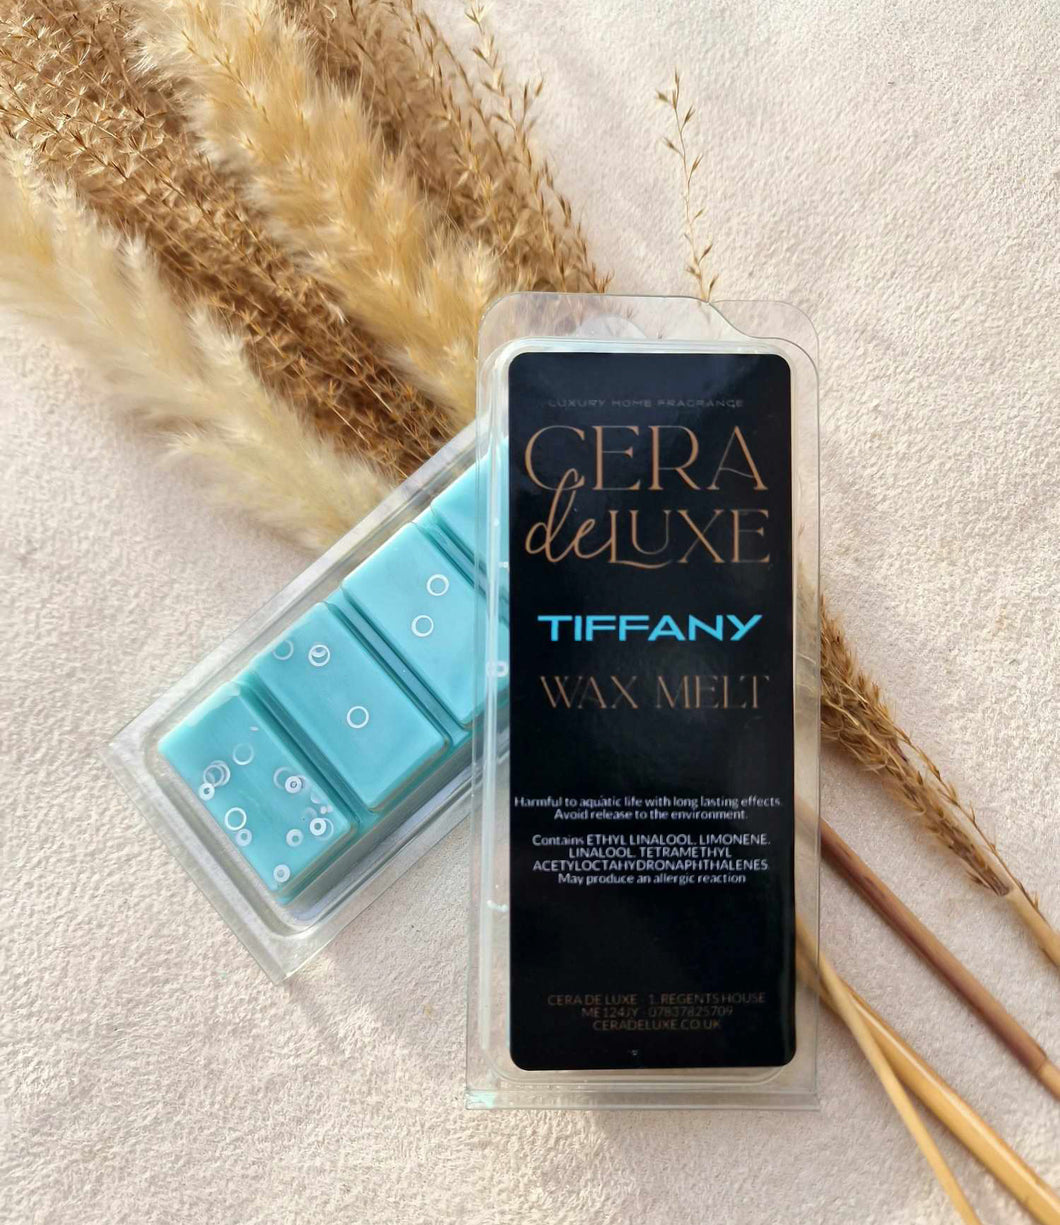 TIFFANY WAX MELT  - Perfume Type